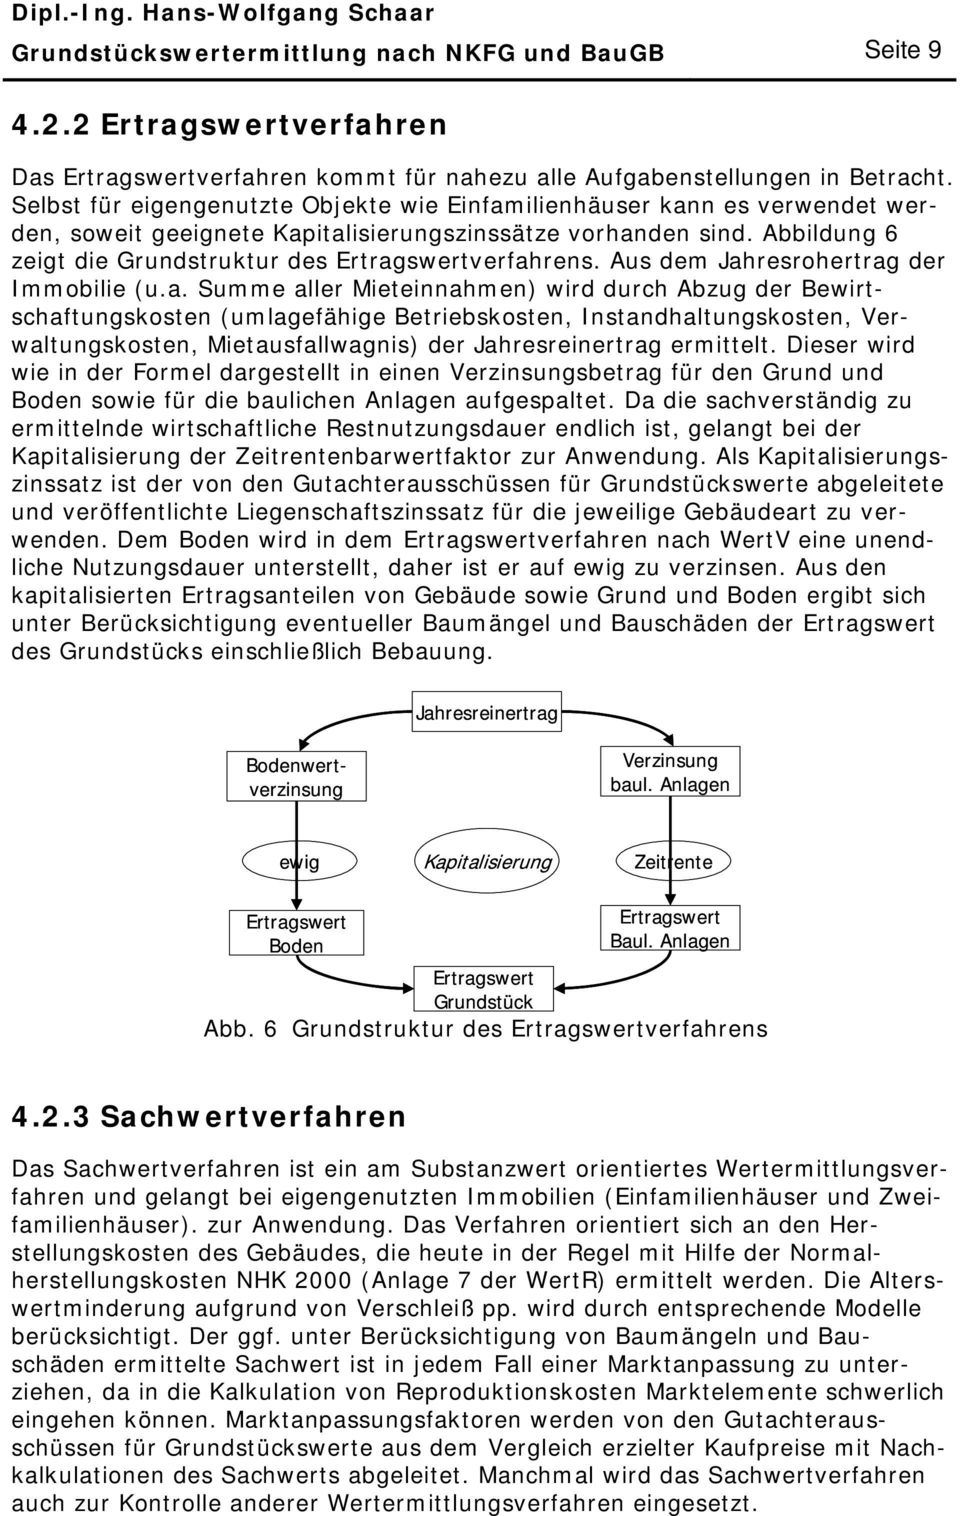 Abbildung 6 zeigt die Grundstruktur des Ertrag